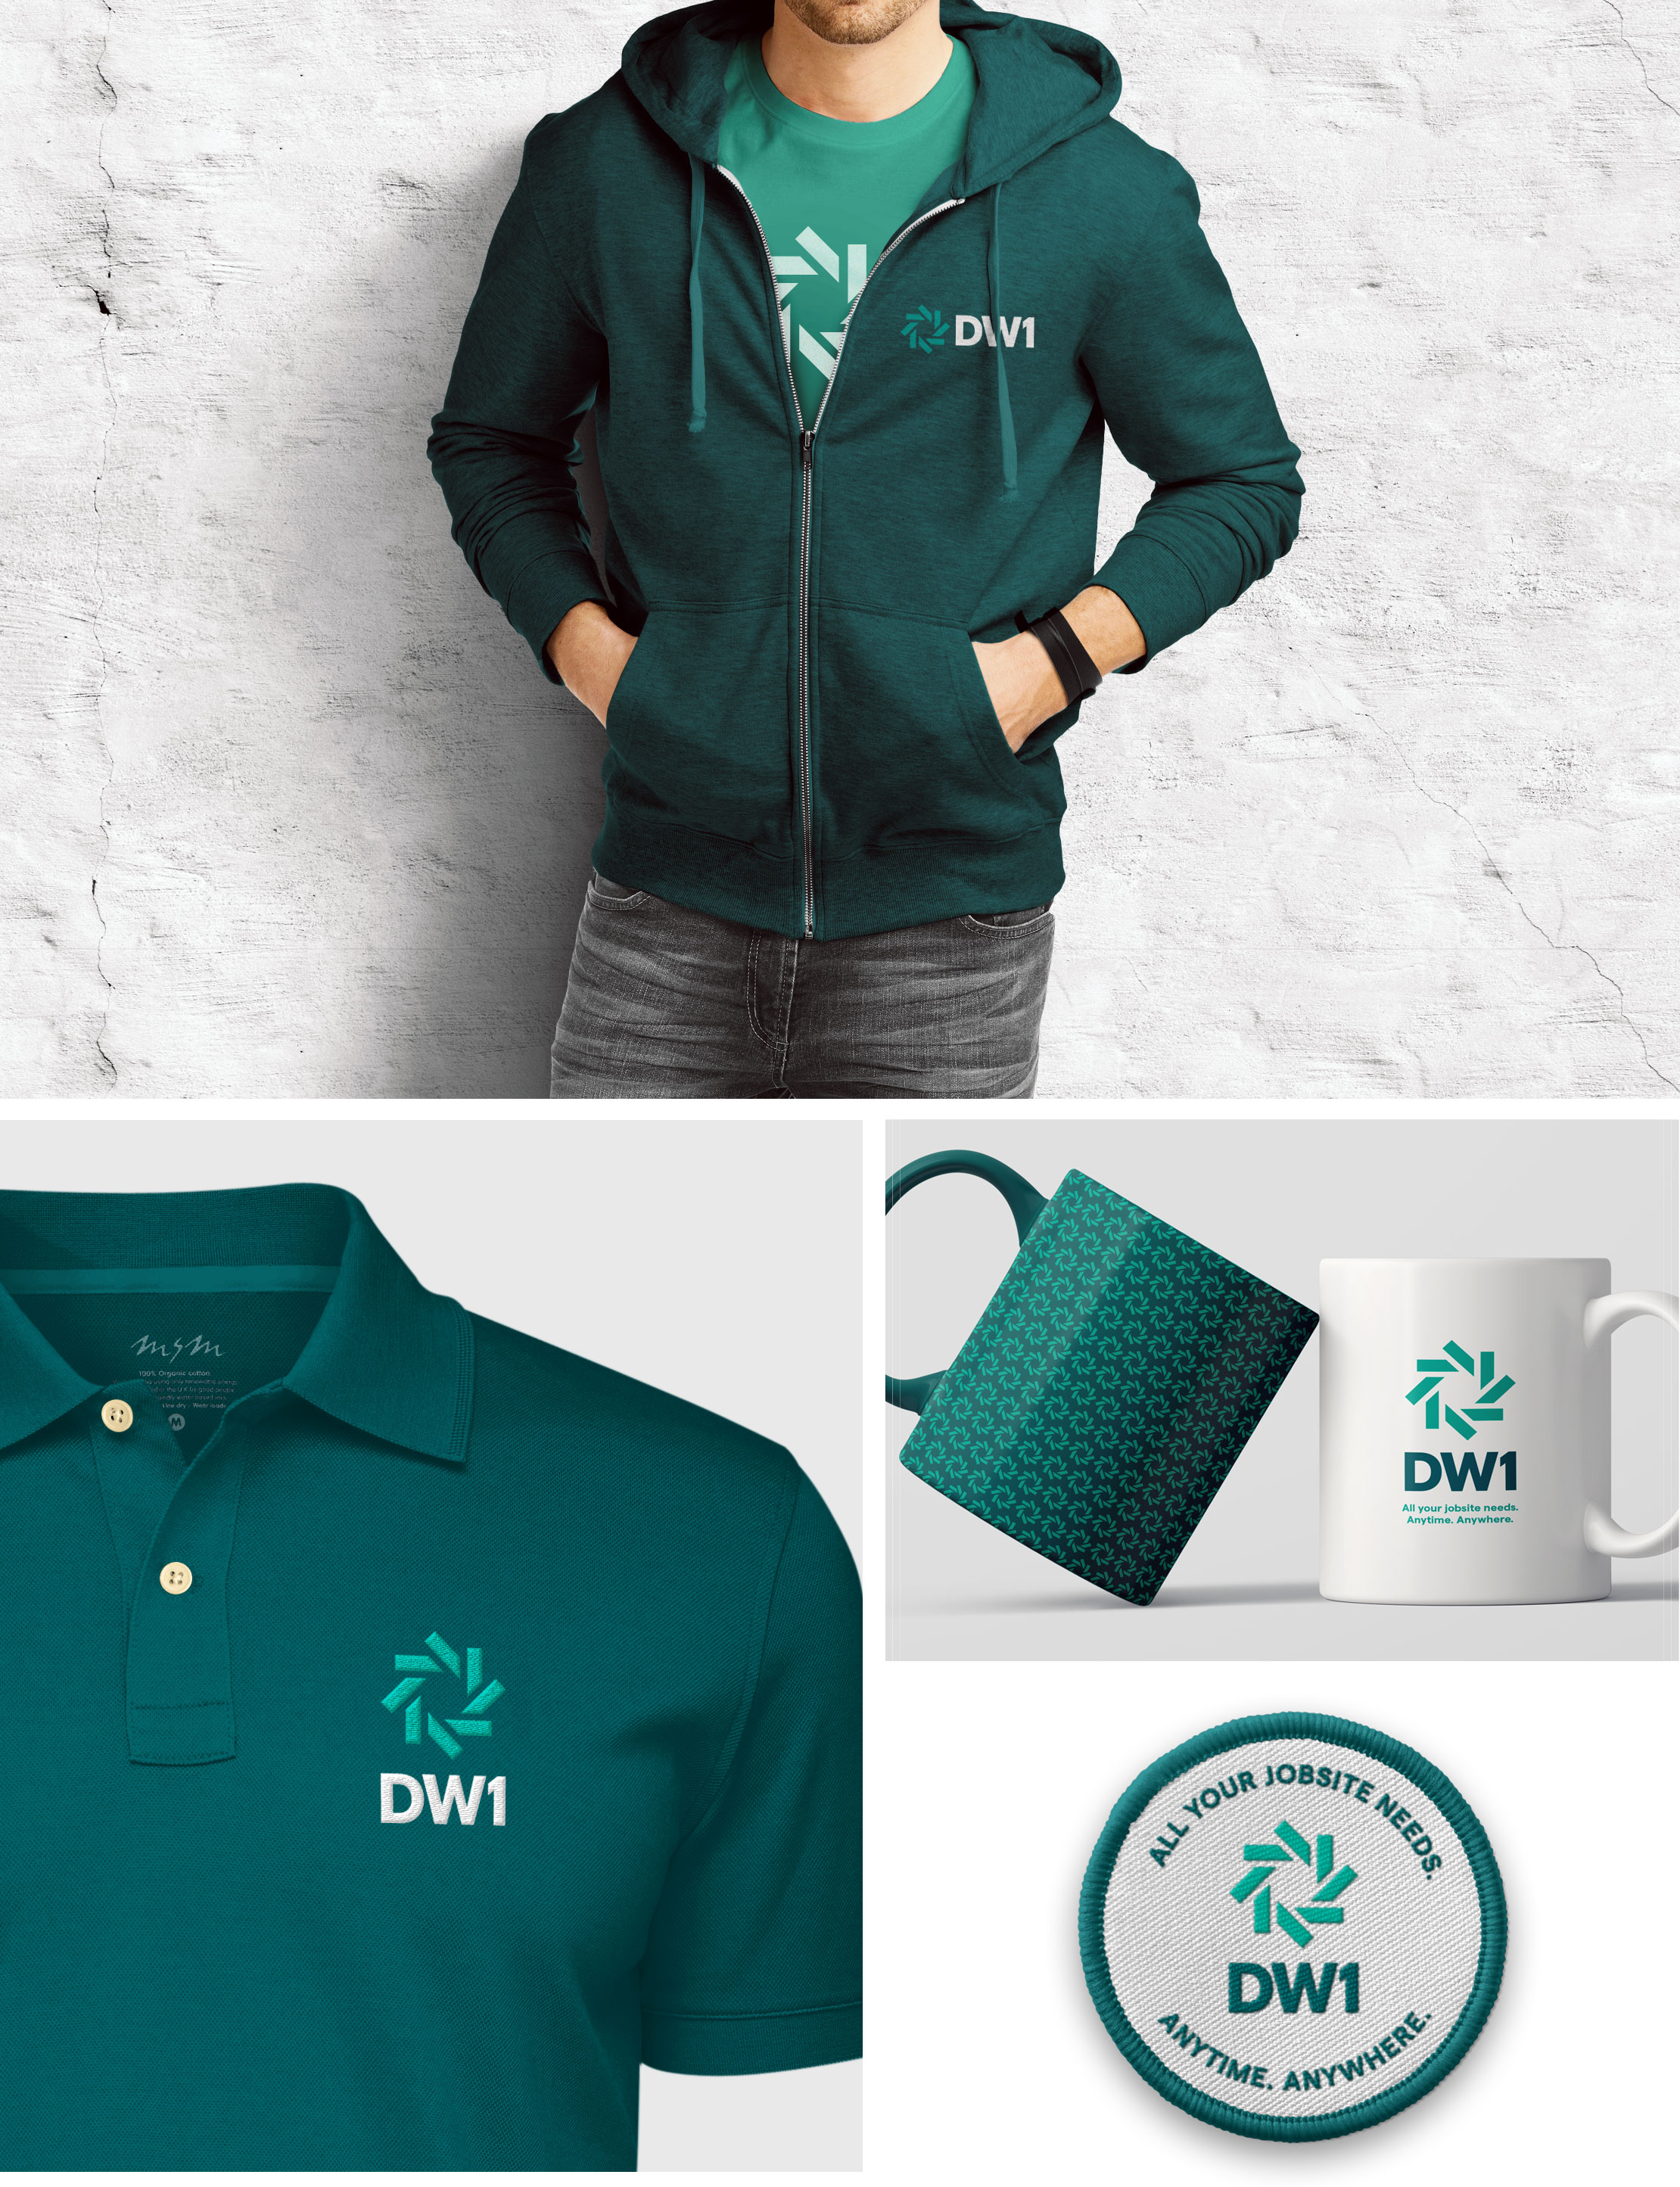 DW1-brand identity-9